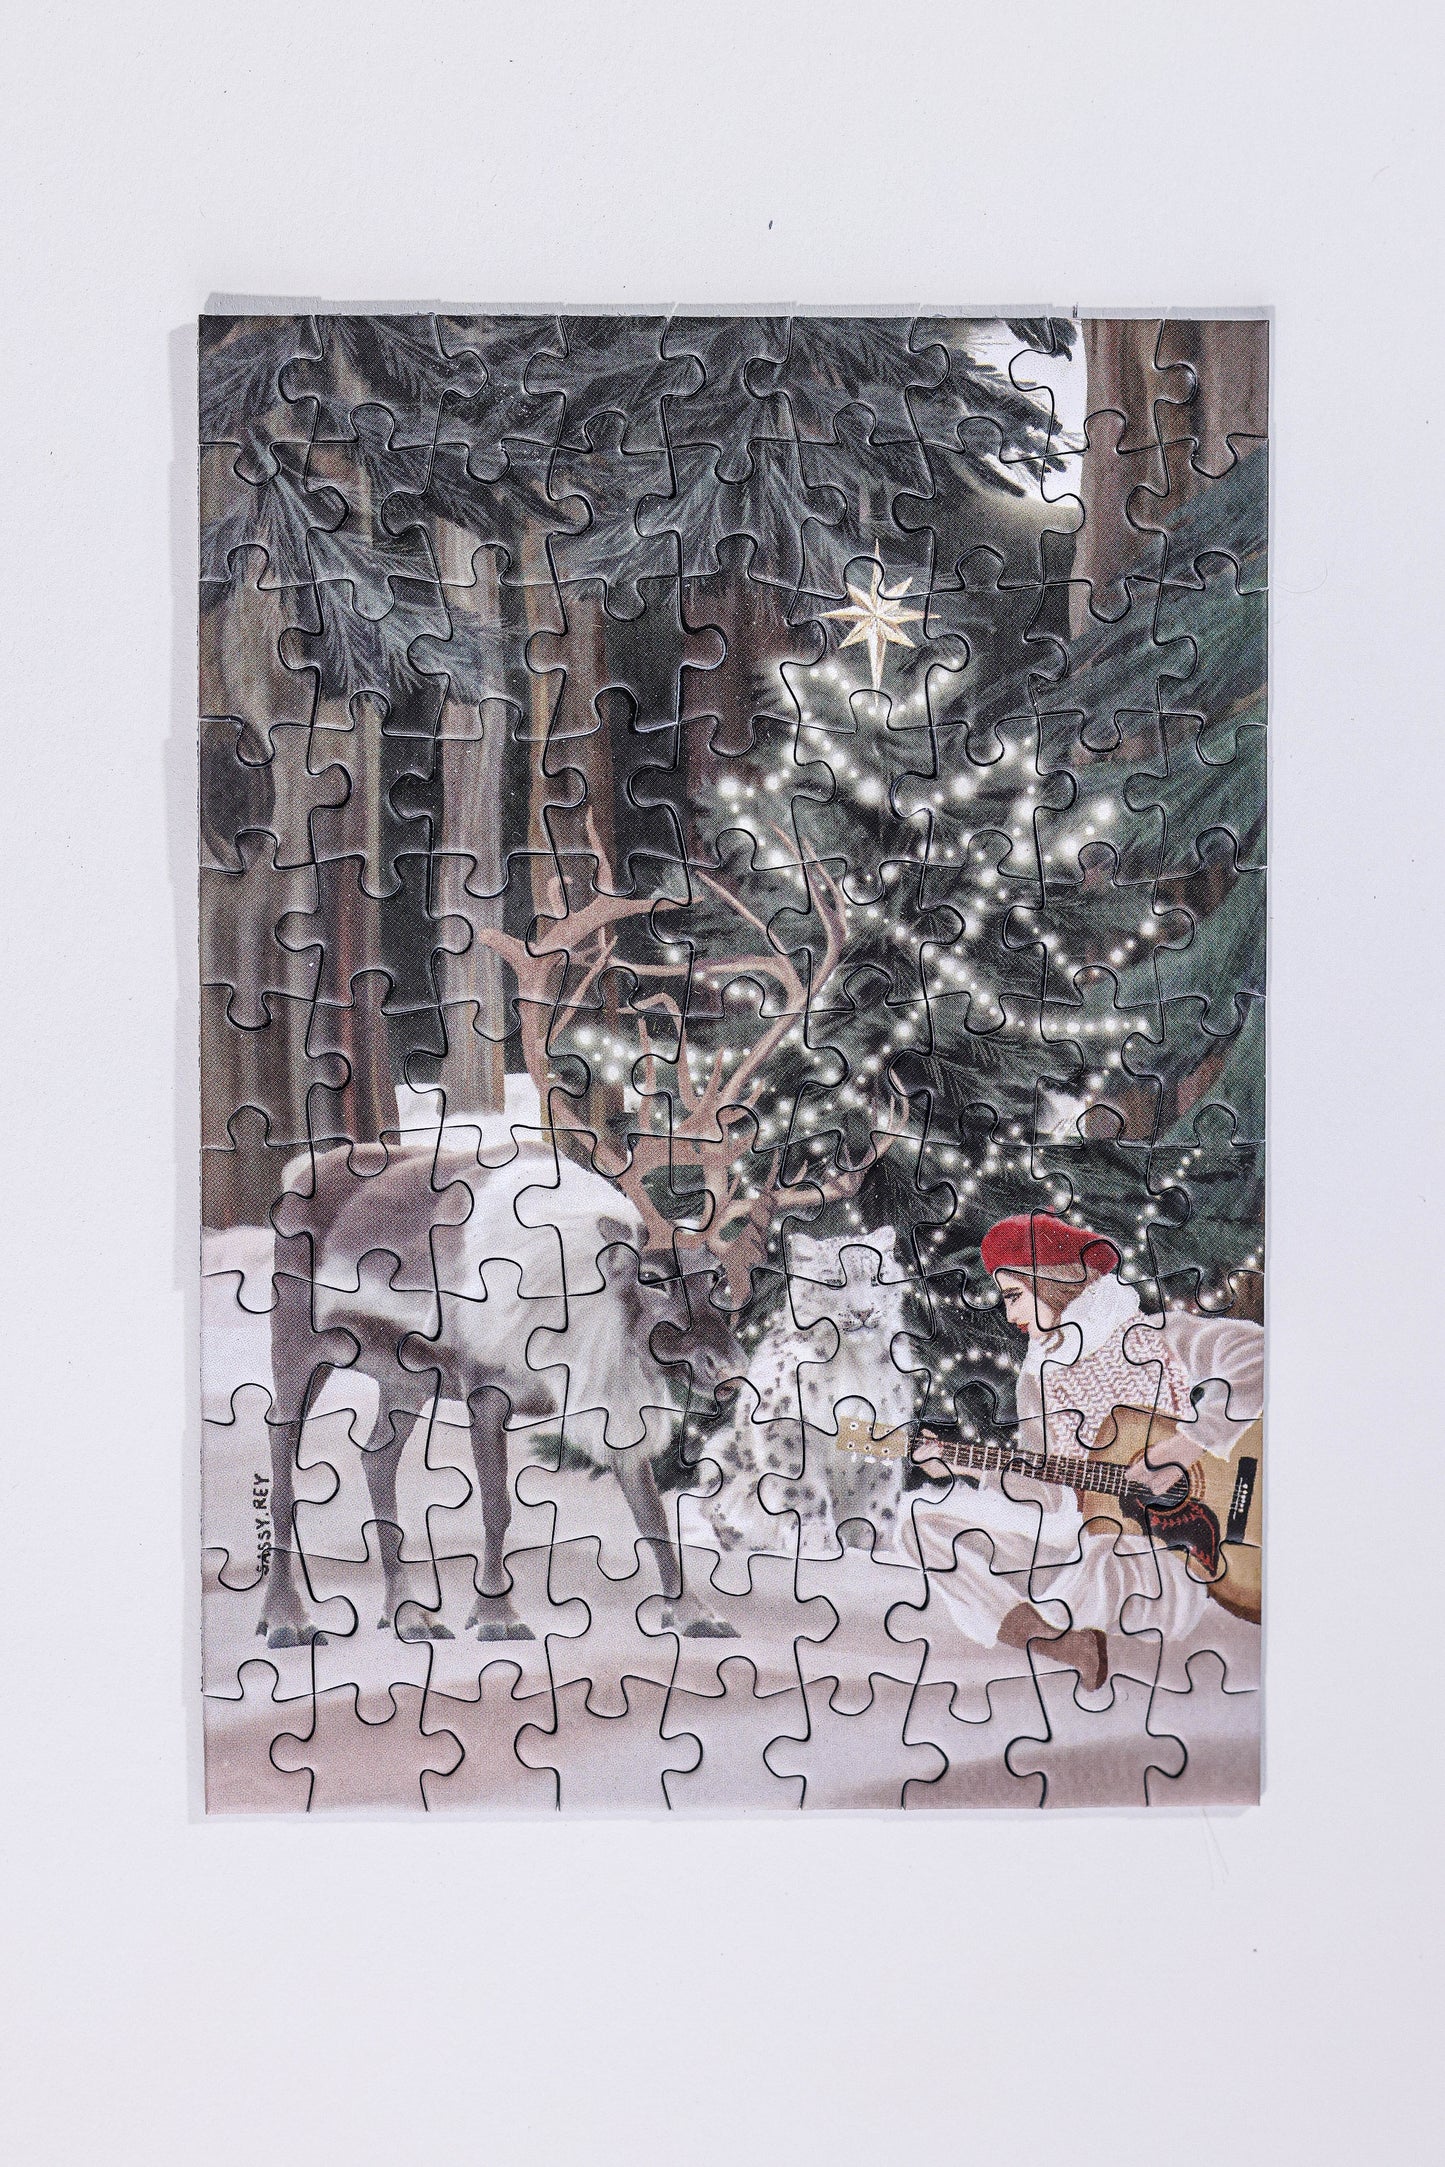 "Christmas sing along" par Les minis de RoseWillie et La Fabrique, 99 pièces